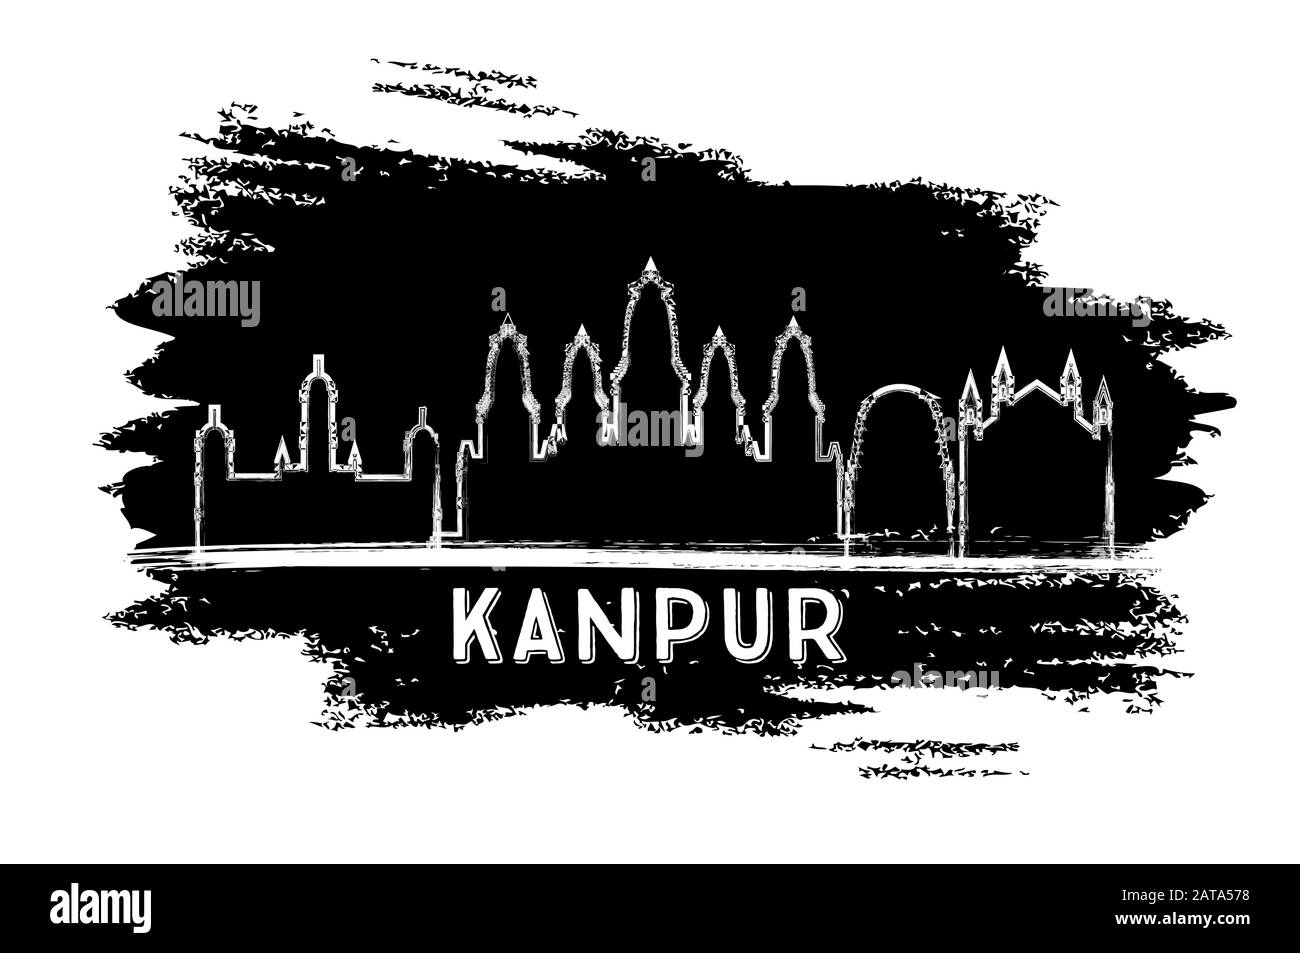 Kanpur India Città Skyline Silhouette. Schizzo Disegnato A Mano. Illustrazione Vettoriale. Concetto Di Viaggio D'Affari E Turismo Con Architettura Storica. Illustrazione Vettoriale